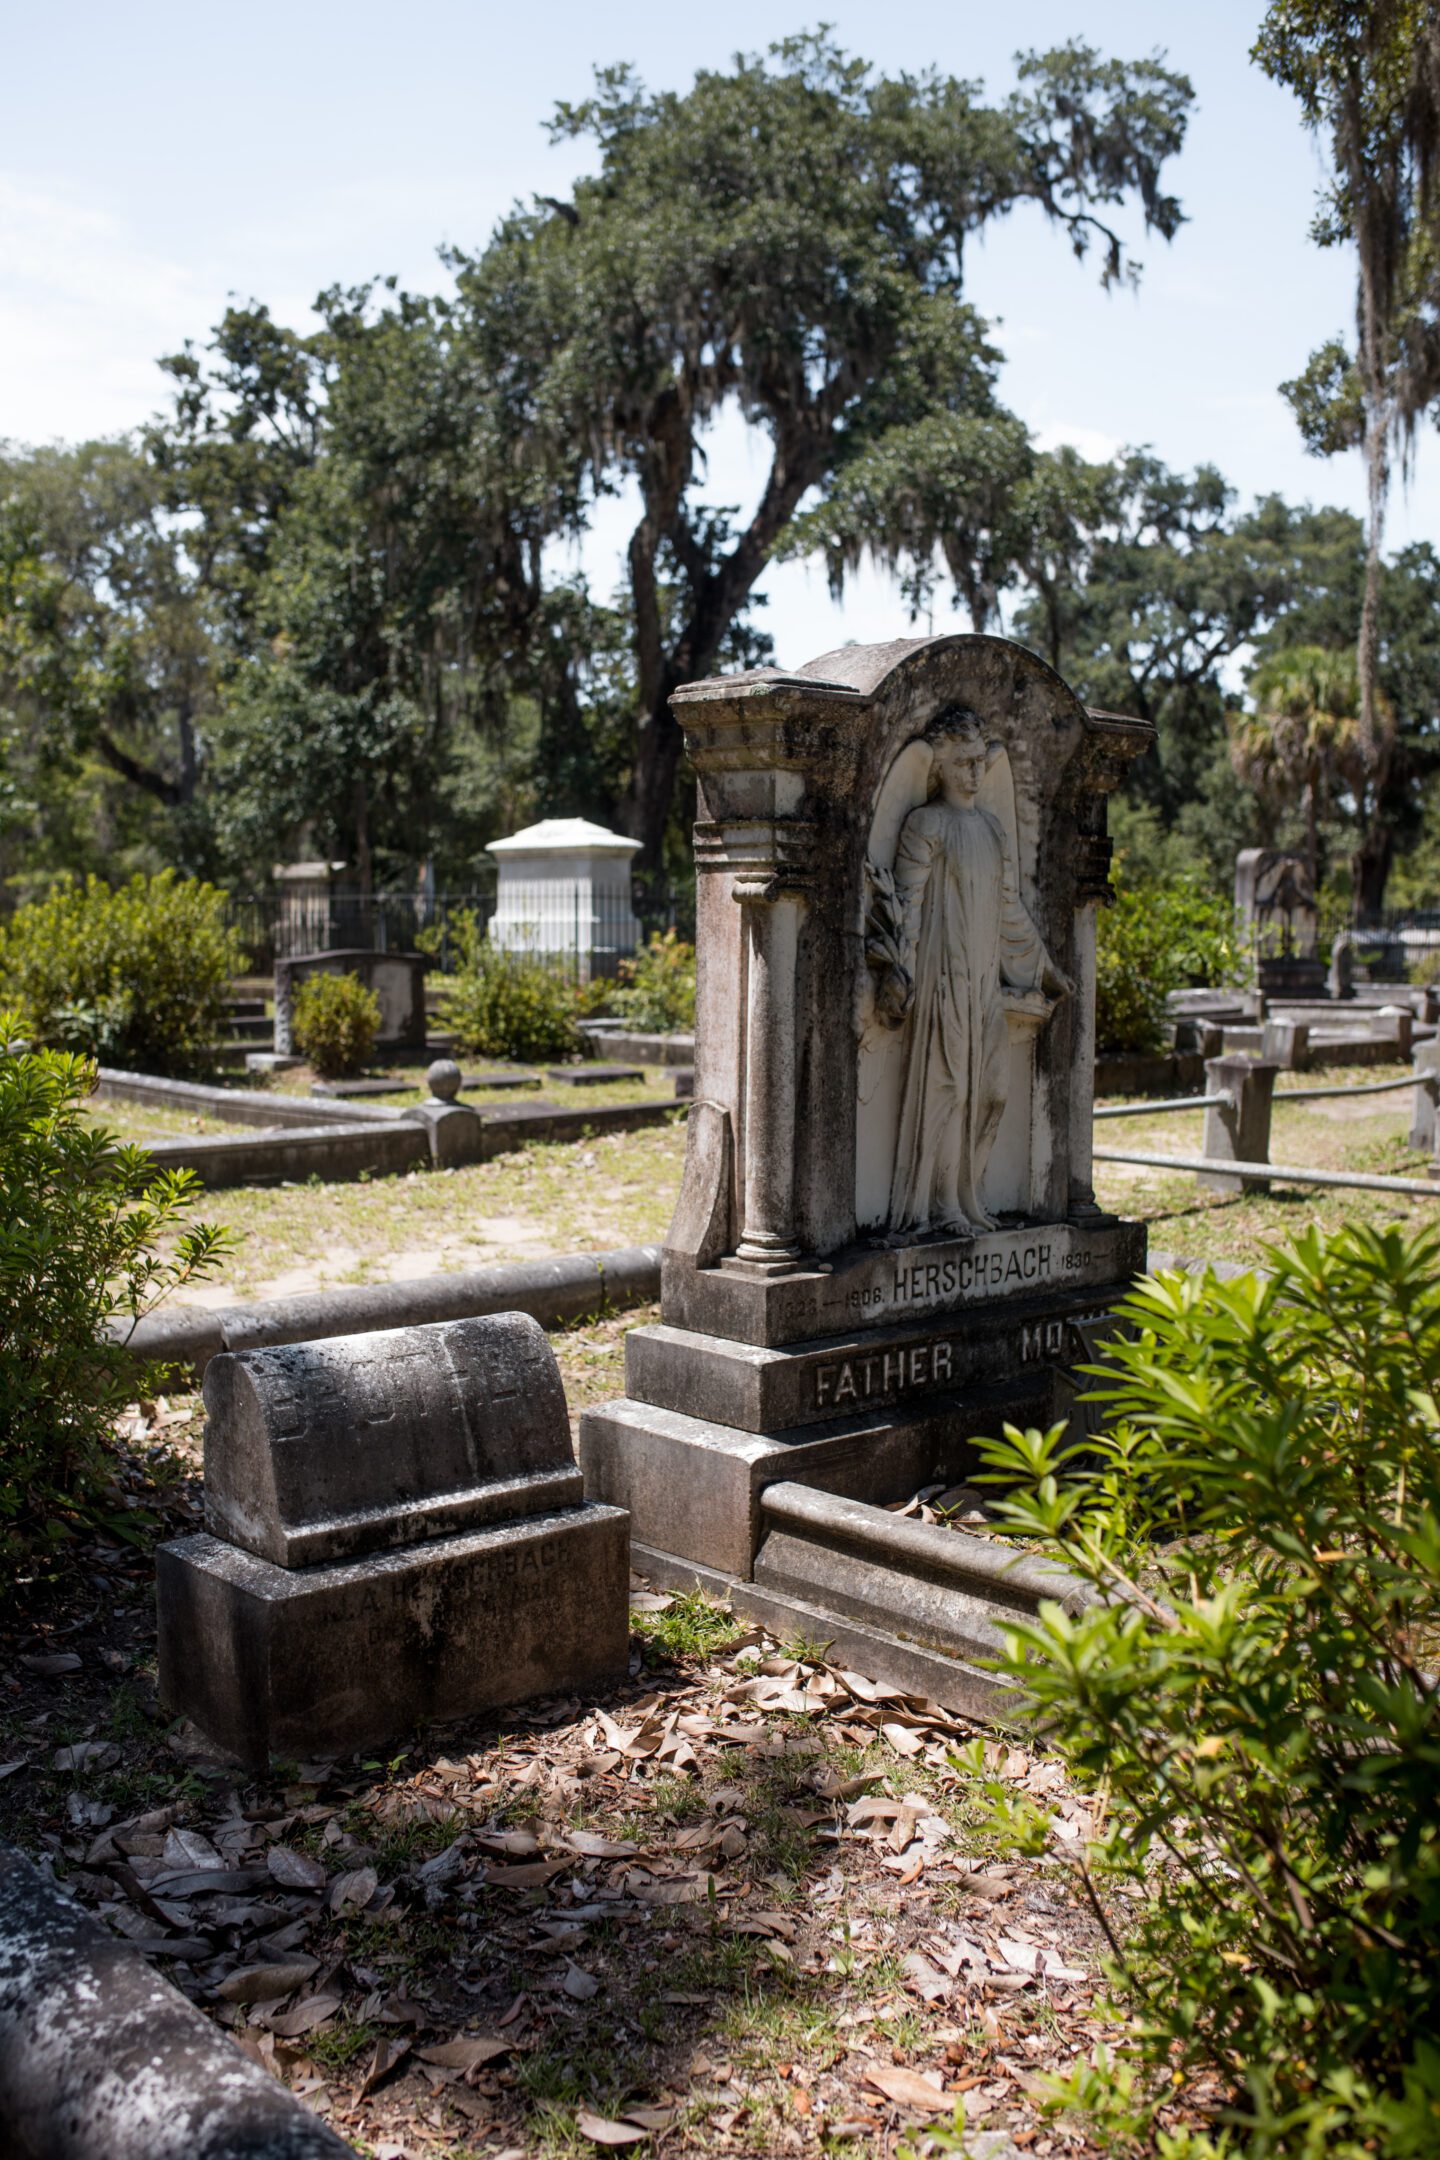 Gravestone heads in a cemetery, day trip to savannah georgia